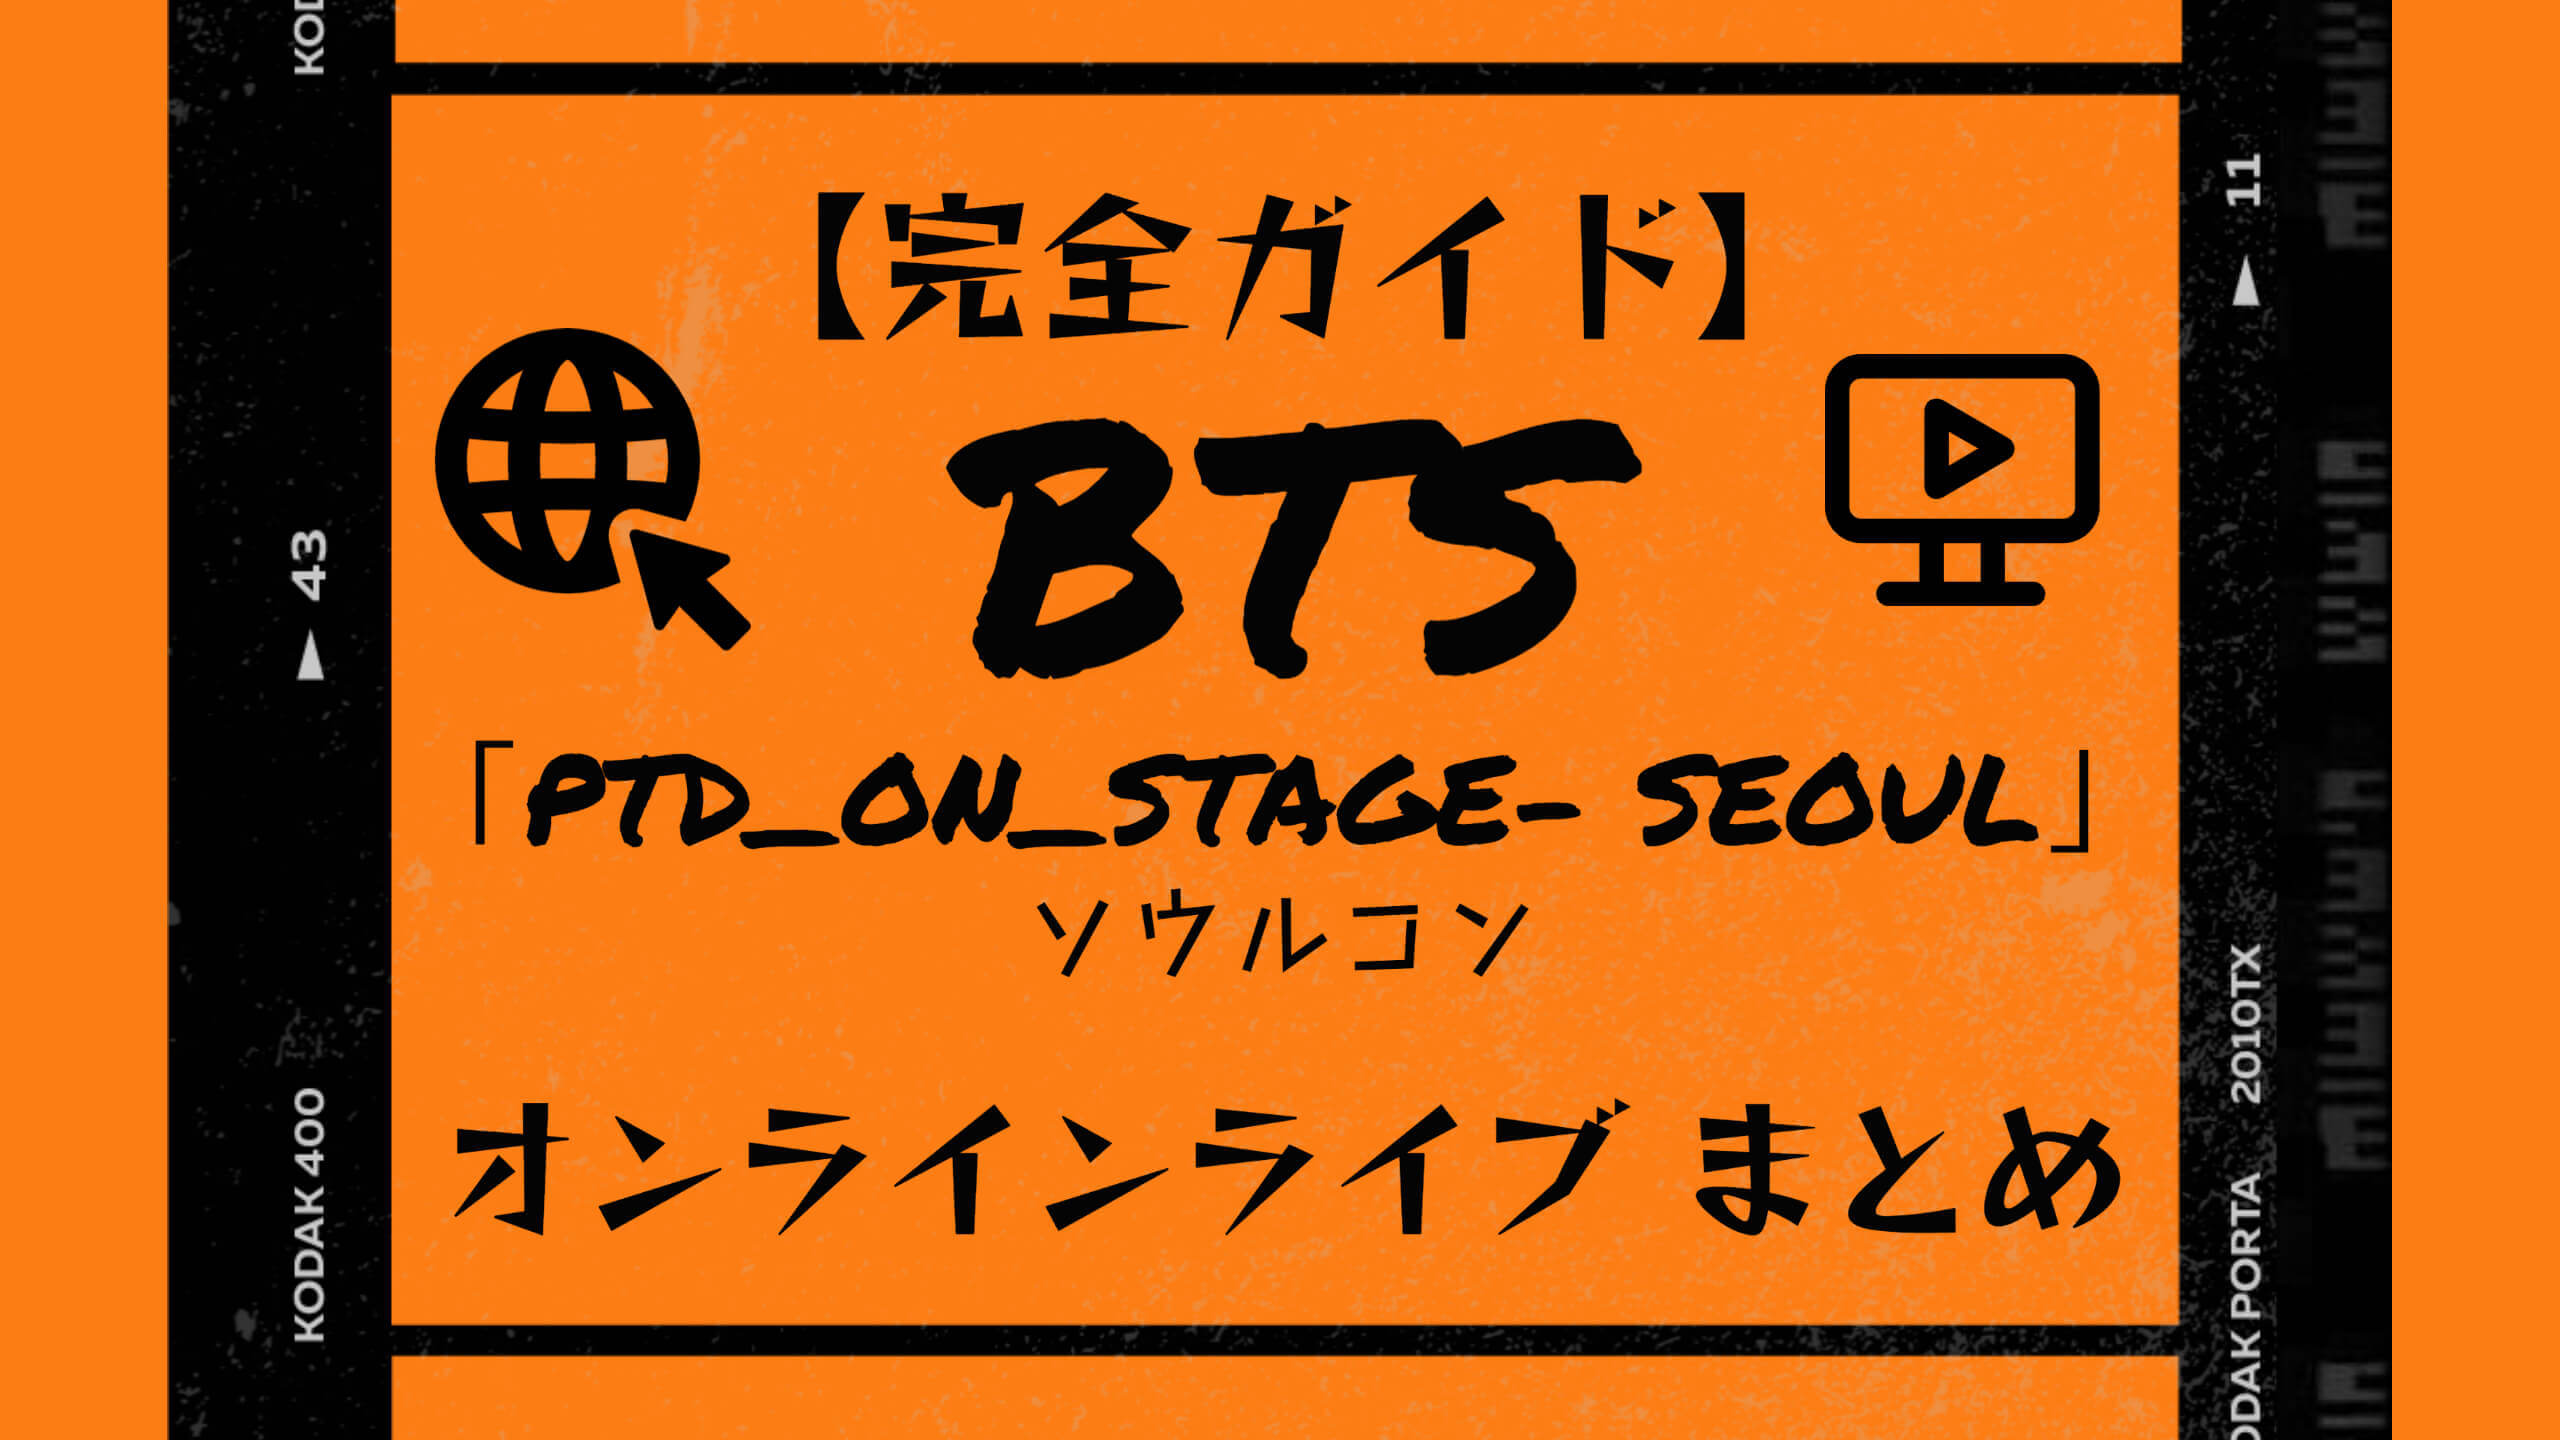 完全ガイド】BTS「PTD_ON_STAGE- SEOUL」ソウルコン・オンラインライブまとめ «